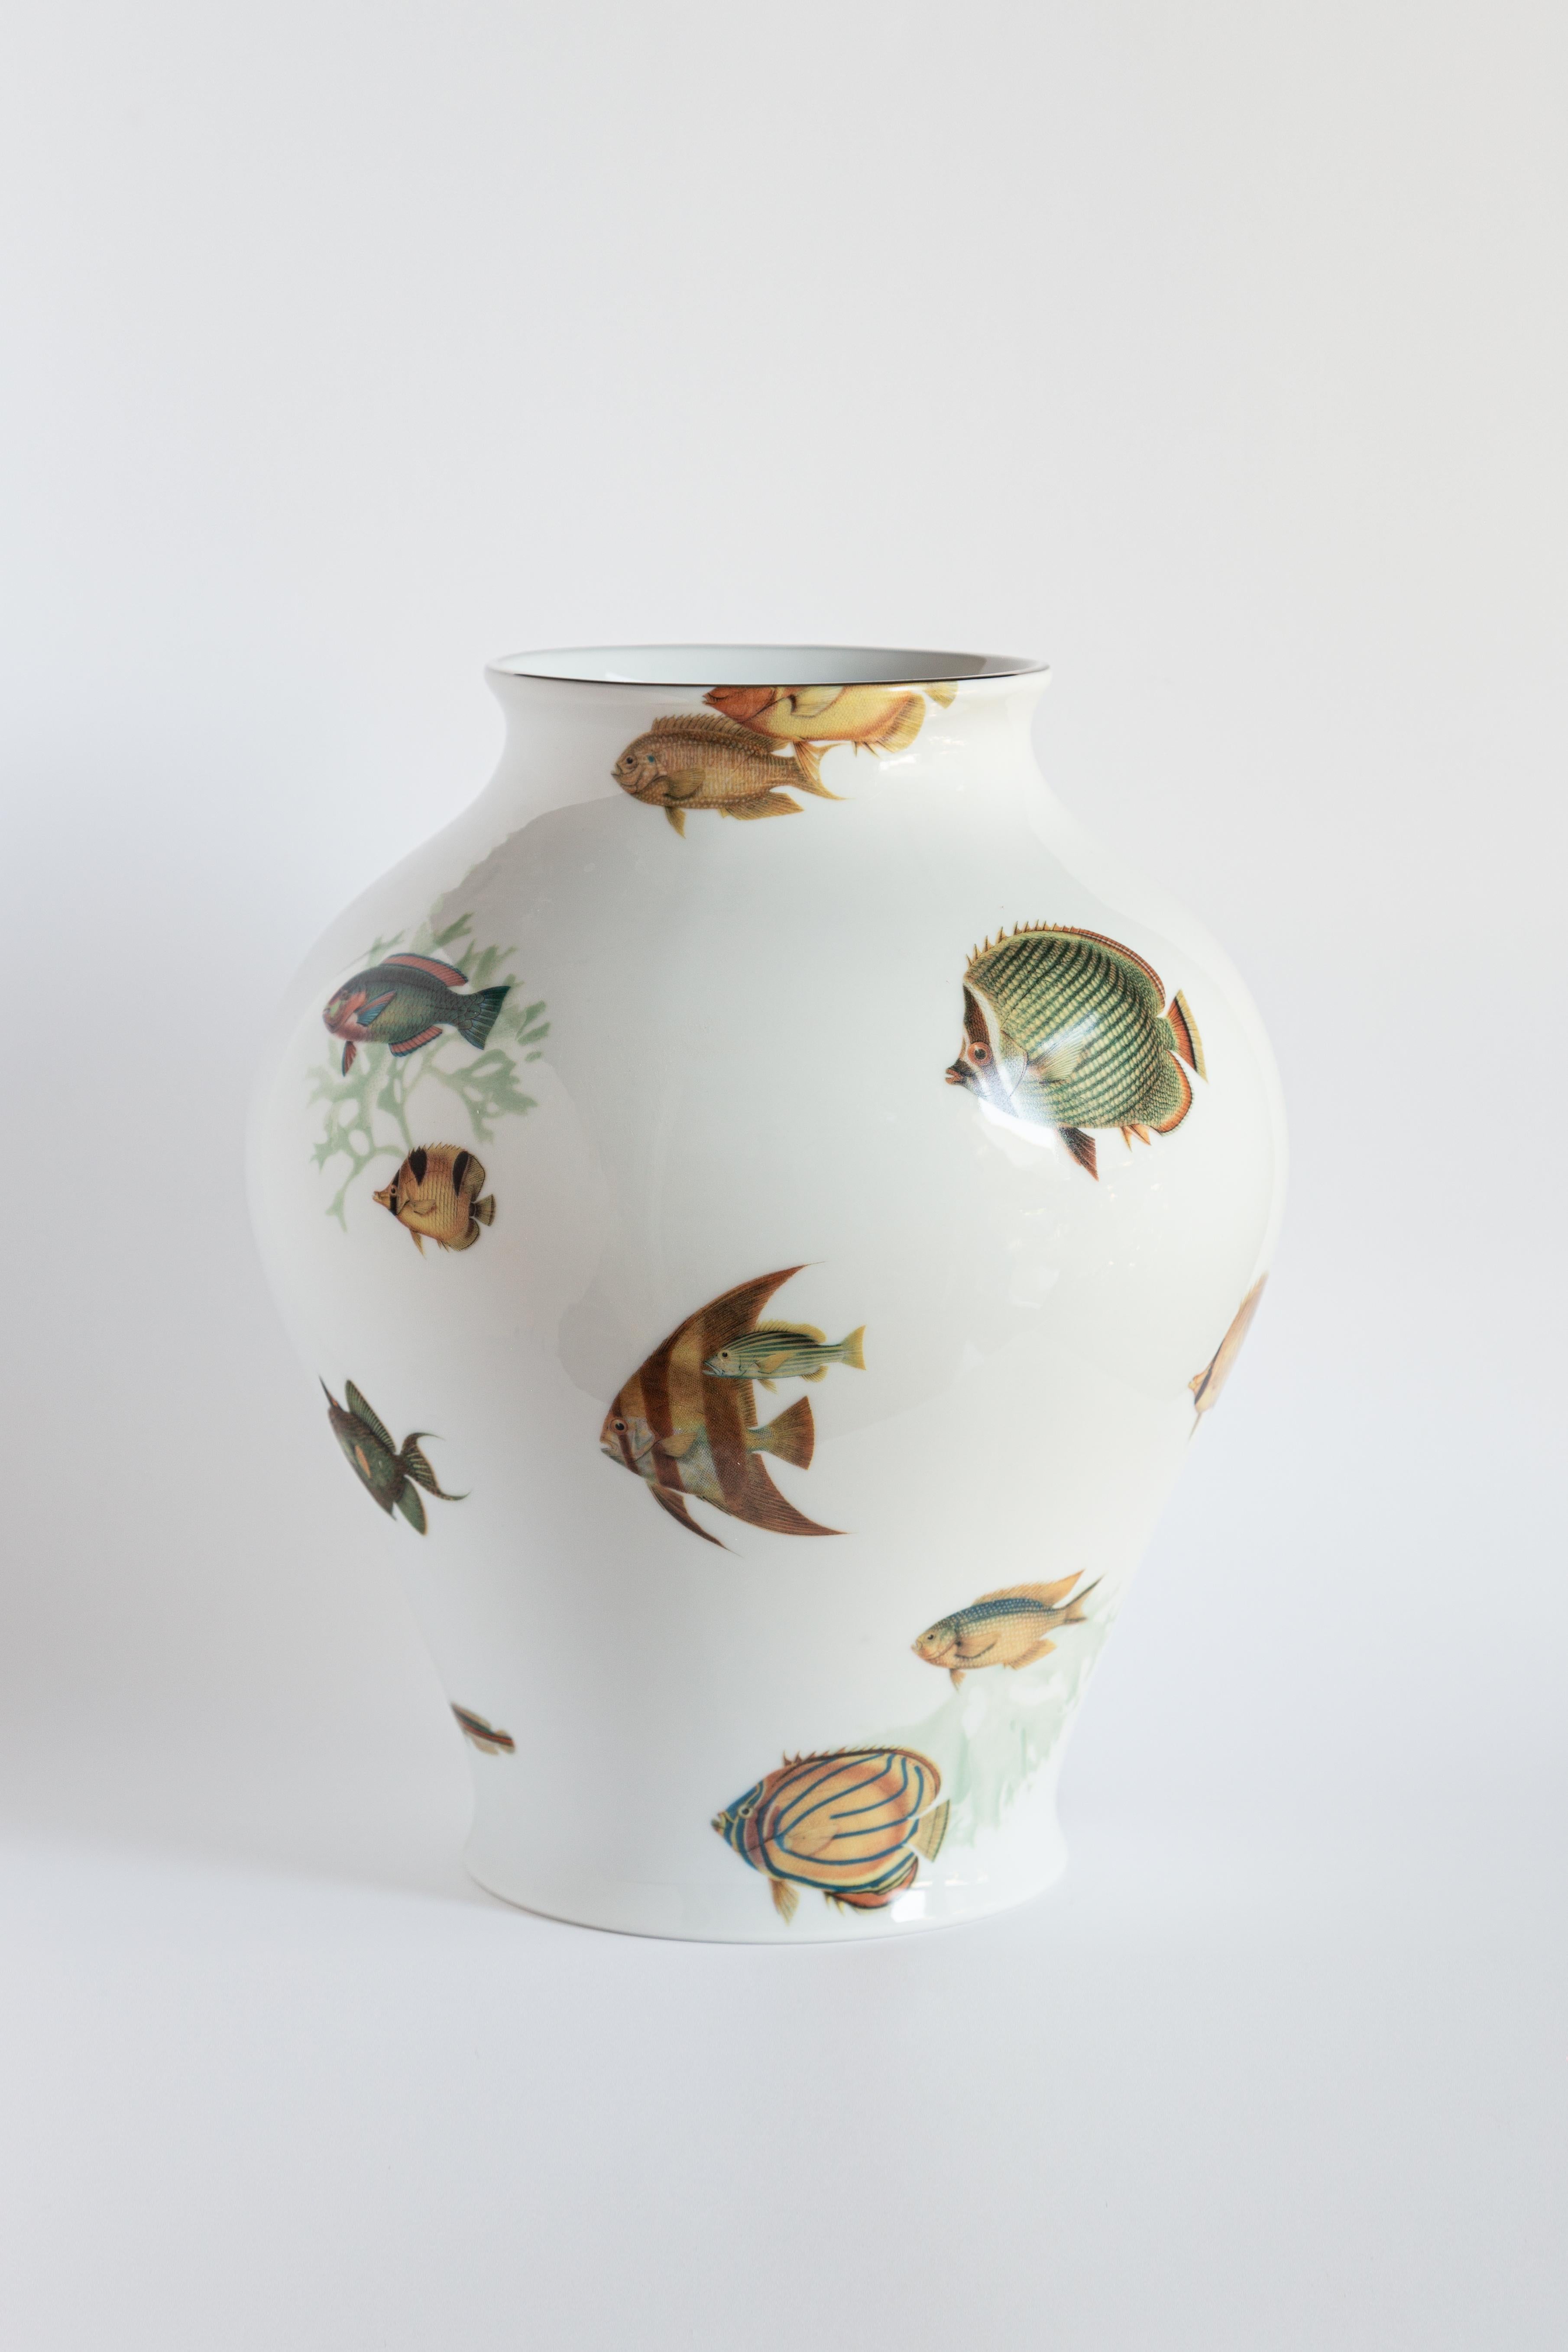 Le design classique de ce vase en porcelaine reprend vie avec des décorations rétro à la saveur contemporaine. Le récif corallien des îles Amami, près du Japon, inspire ce motif où des poissons tropicaux jouent autour de la surface du vase.